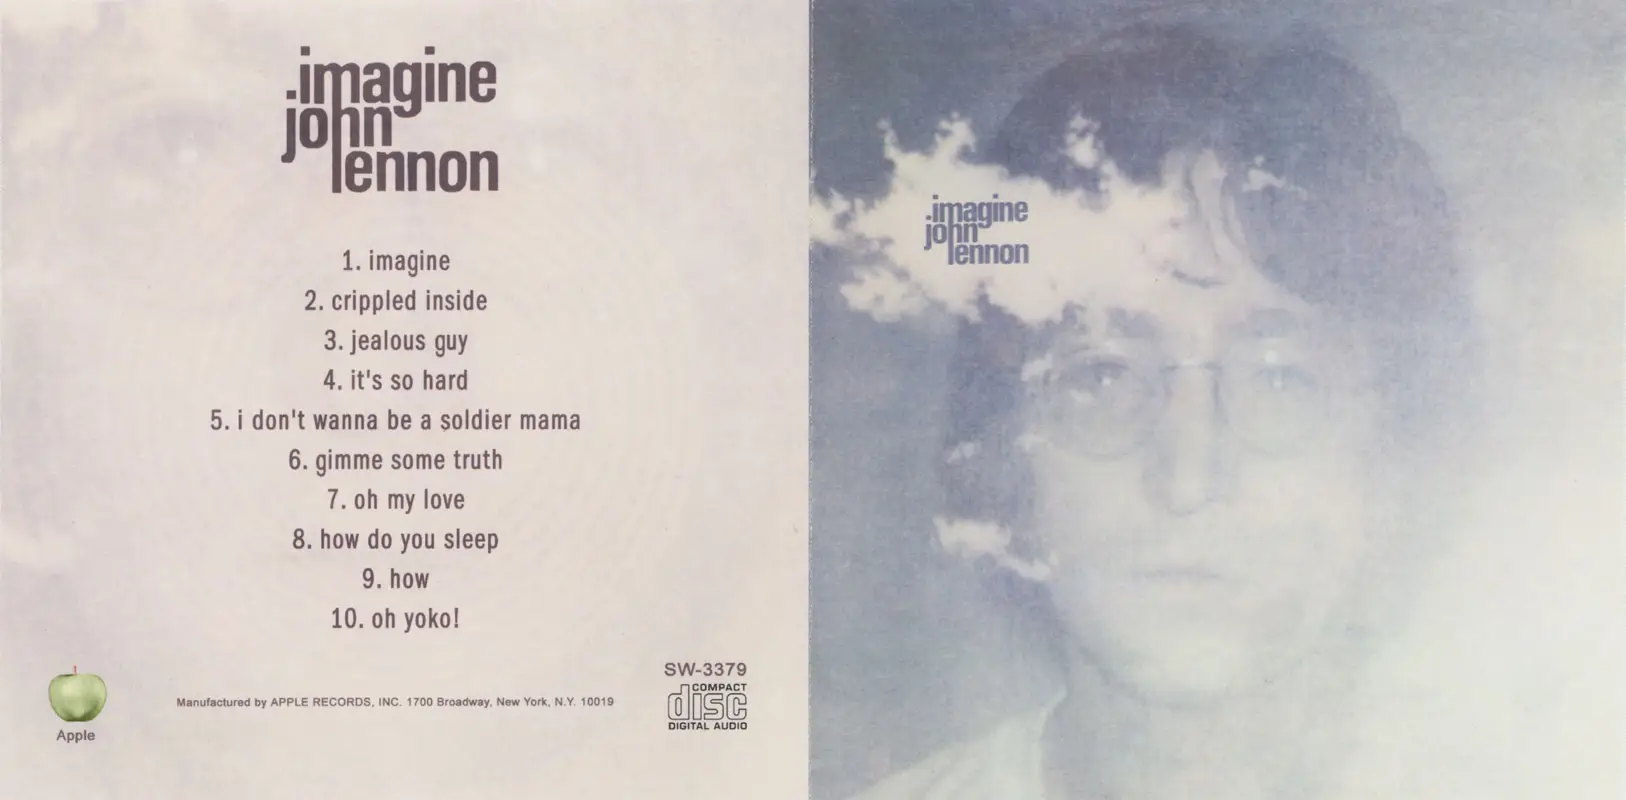 Леннон песня imagine. Джон Леннон 1971. Джон Леннон 1971 imagine. John Lennon imagine обложка. John Lennon - imagine (1971)(Balkanton, 1989).